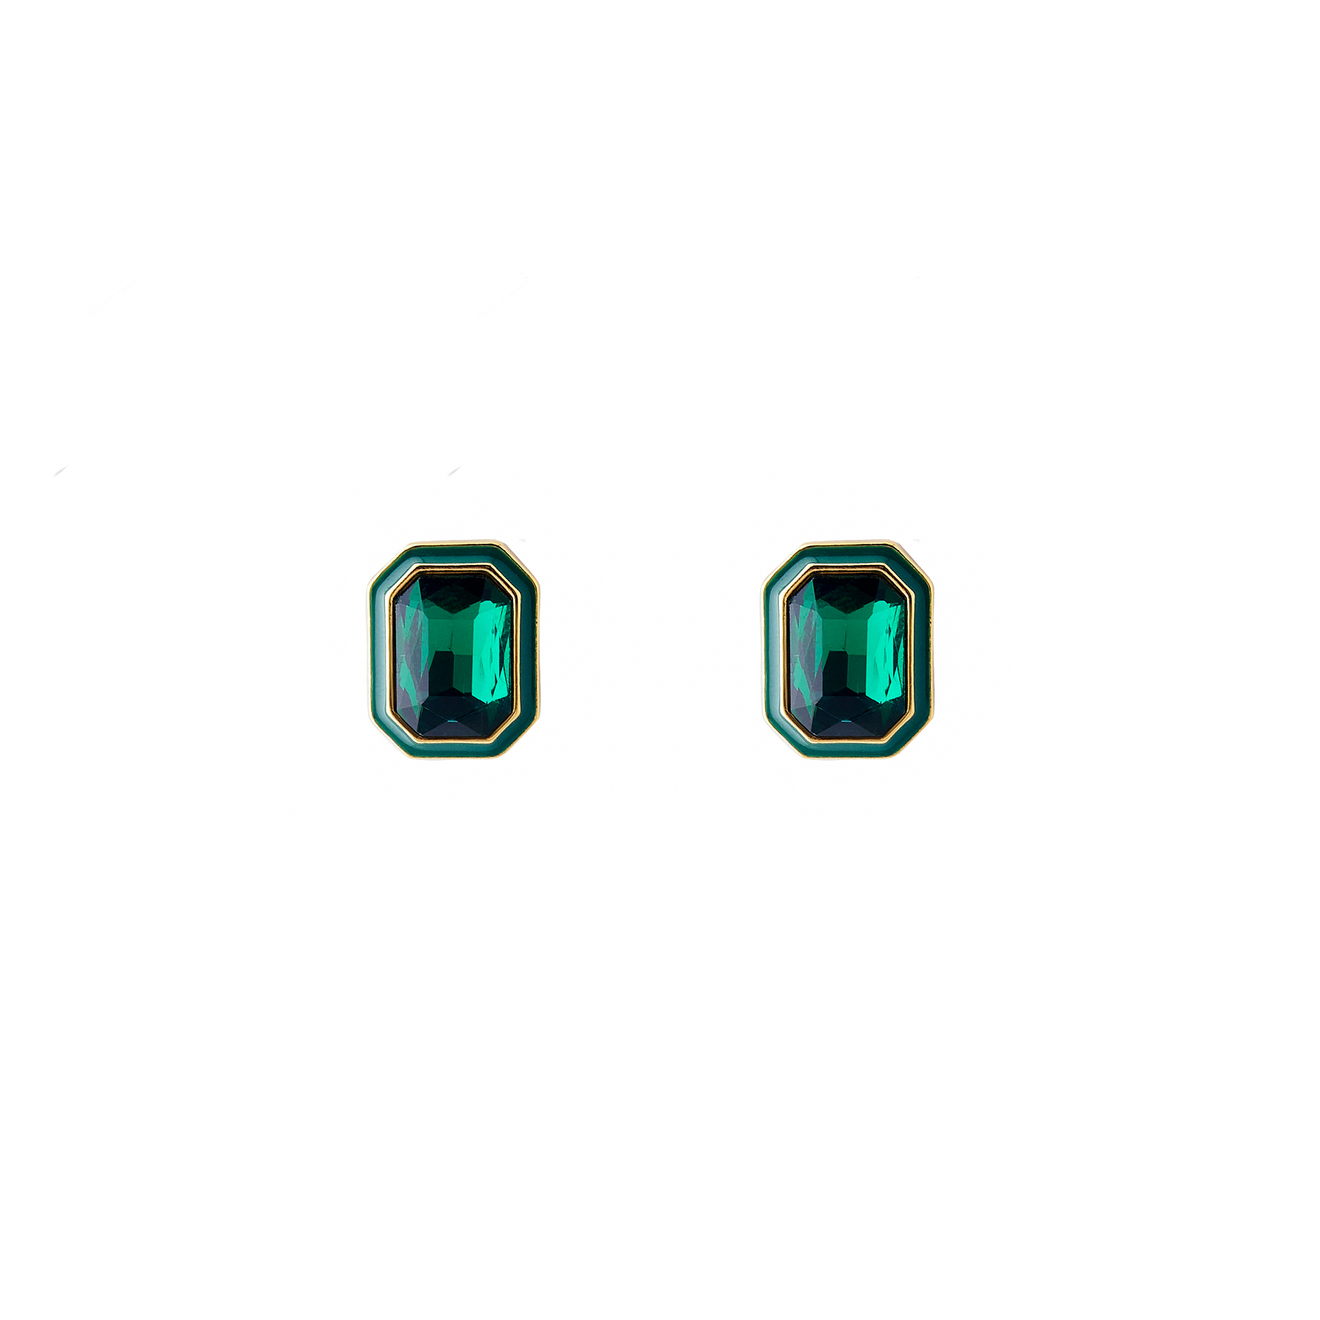 Herald Percy Крупные золотистые серьги с зелеными кристаллами и зеленой эмалью